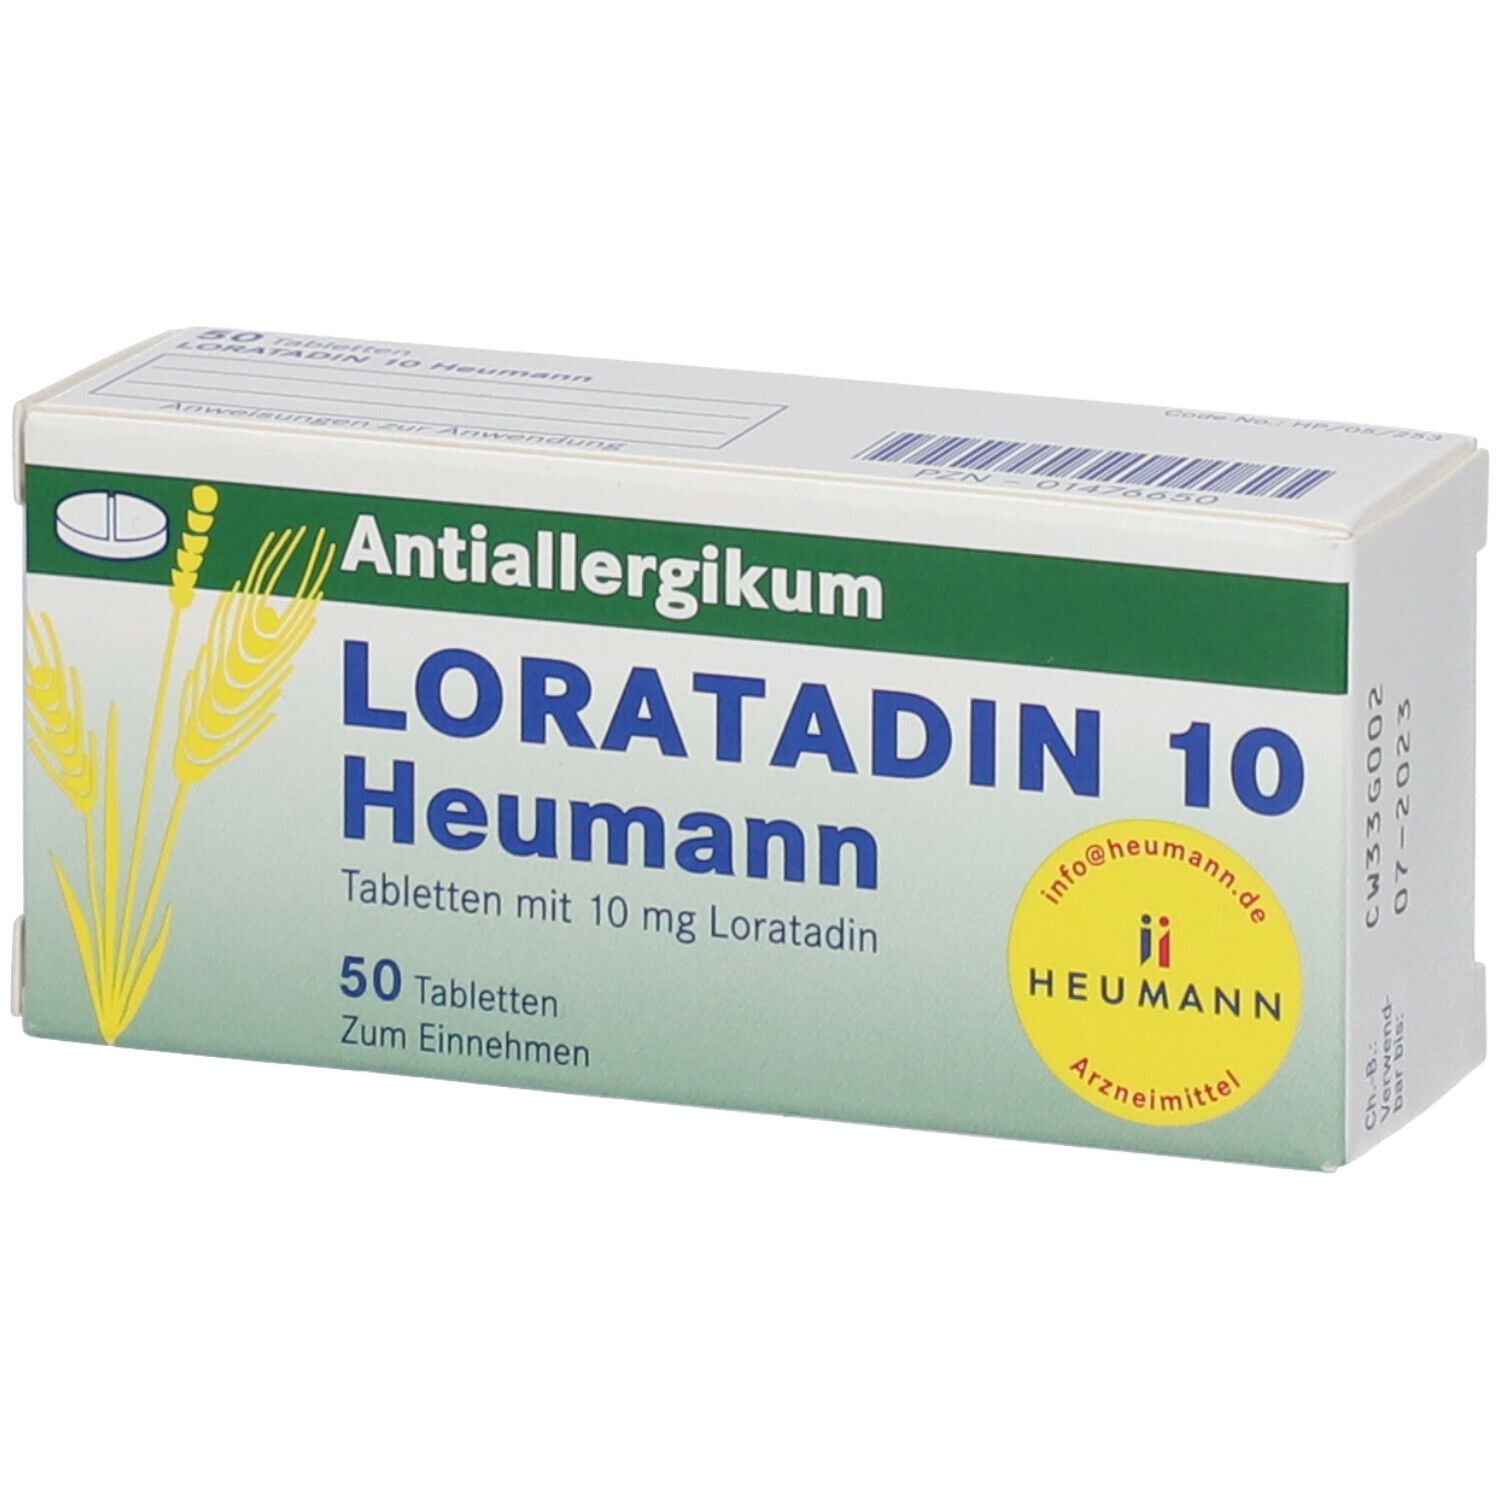 Loratadin 10 Heumann Tabletten